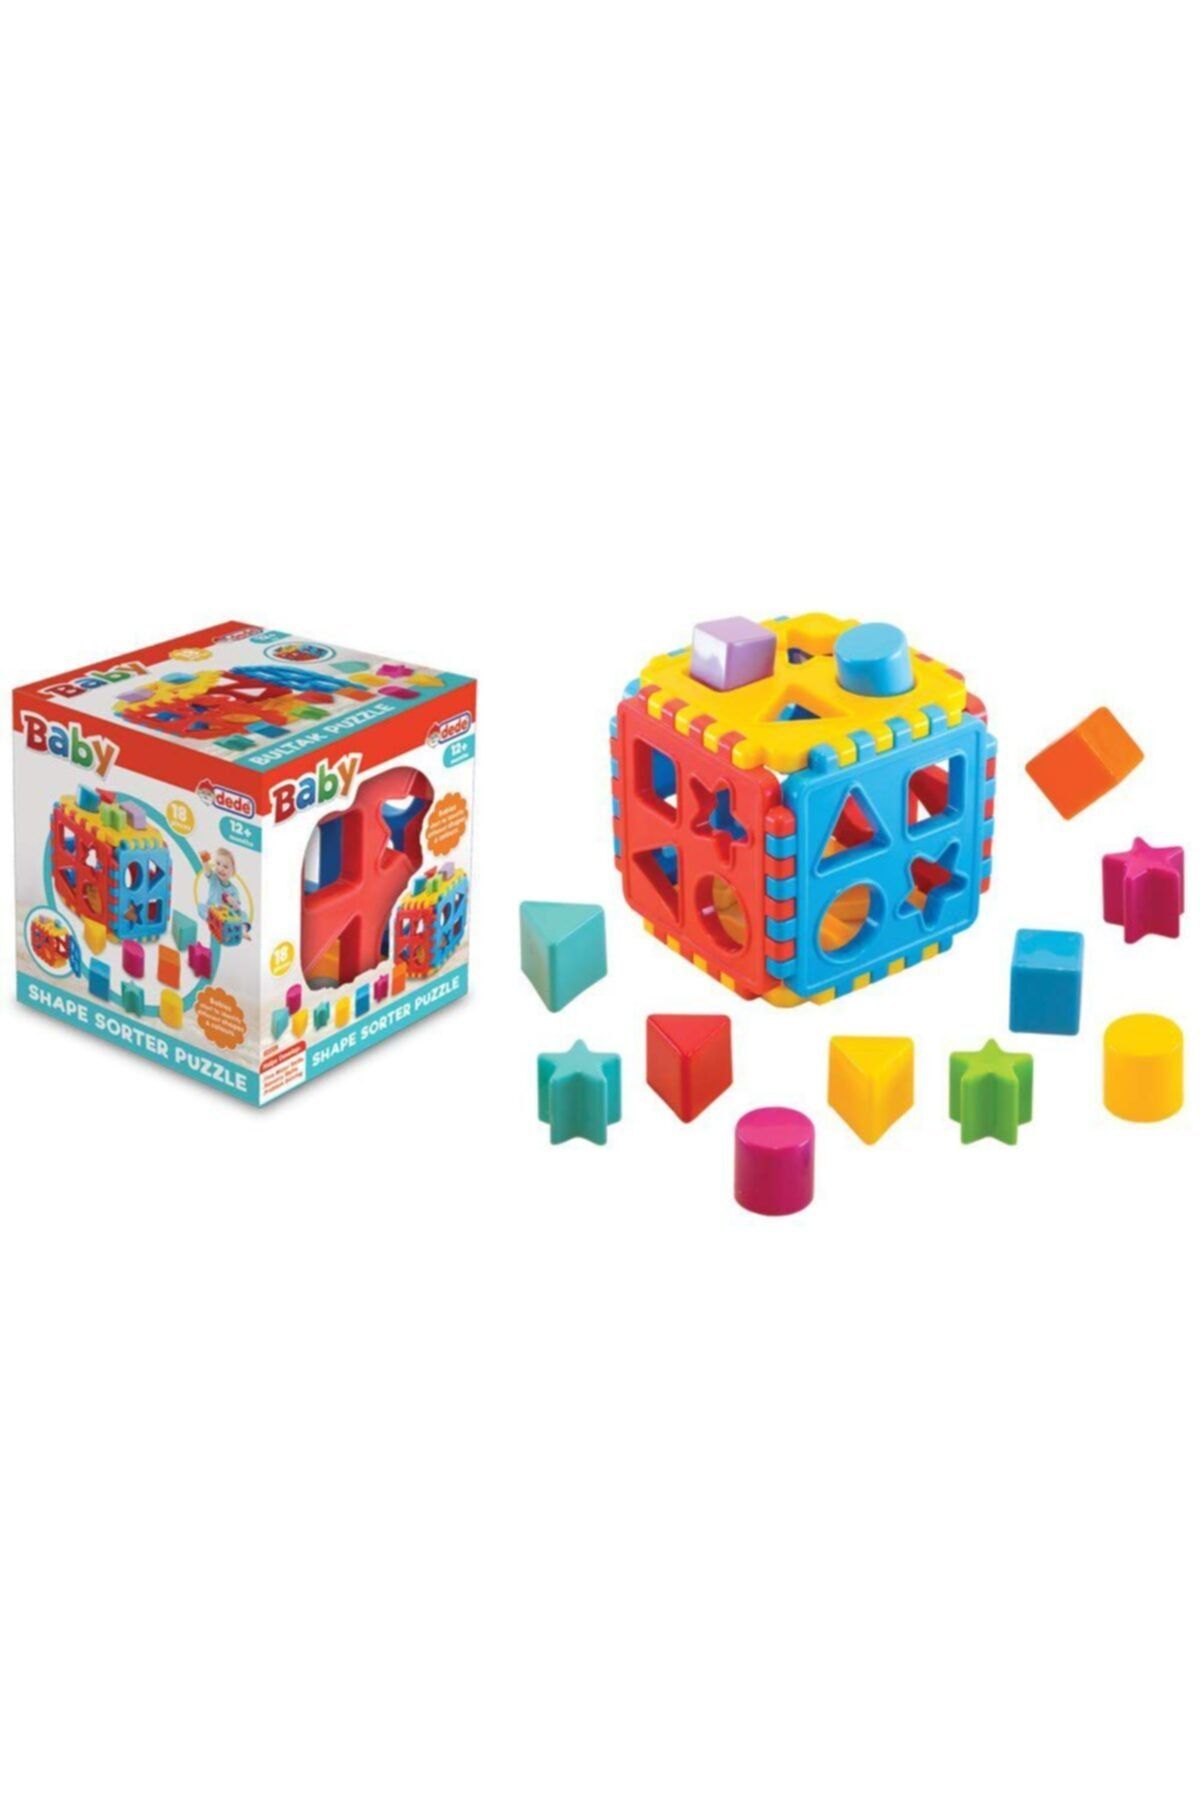 Dede Oyuncak Bultak Küp Puzzle Eğitici Bebek Bultak Geometrik Şekil Renkli Oyuncak